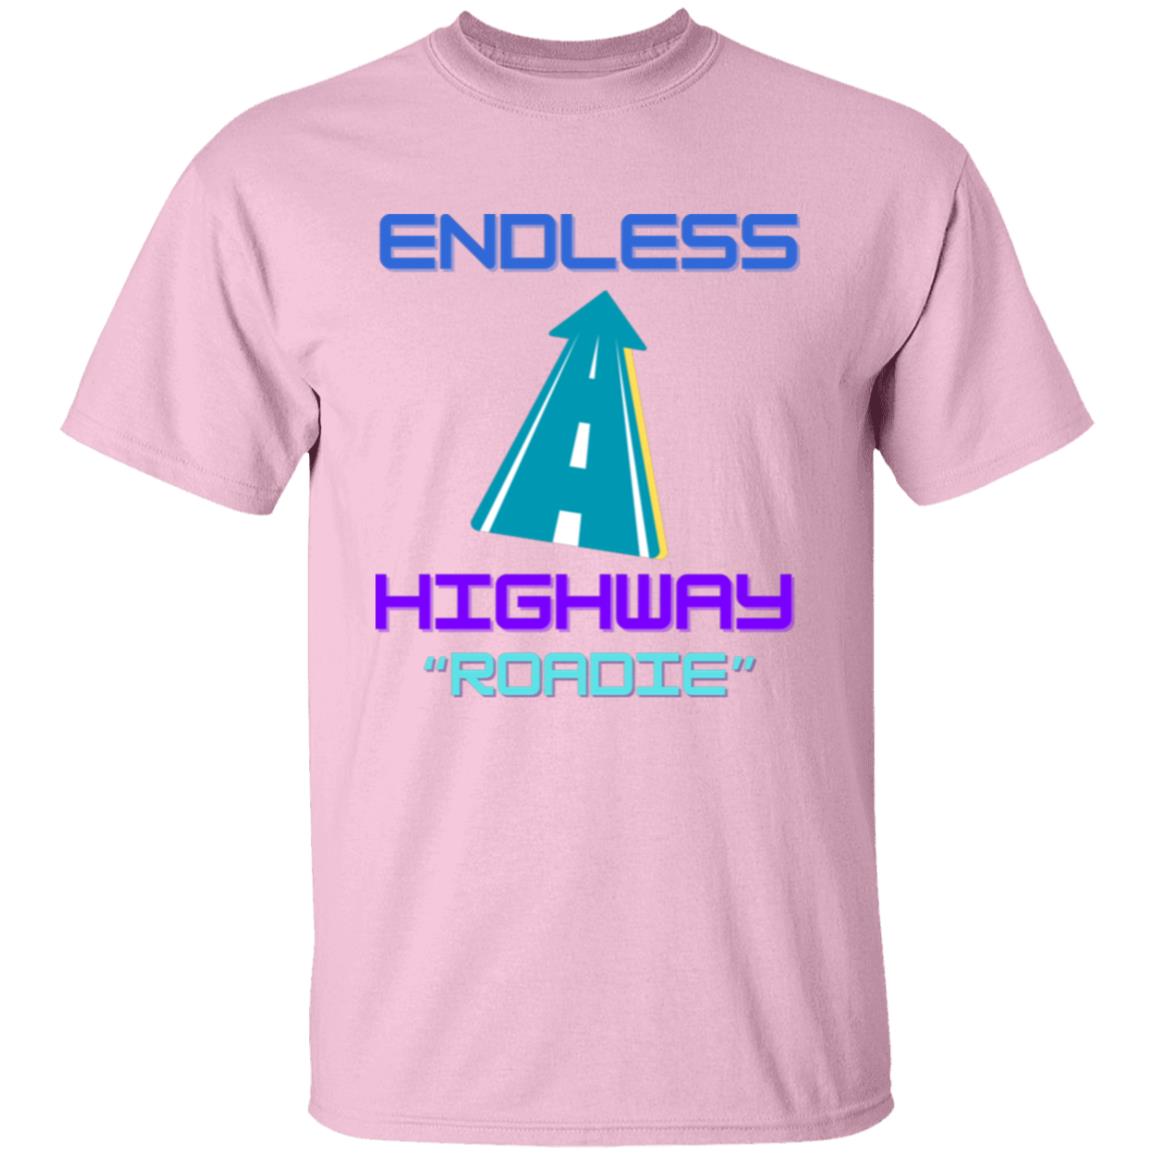 Endless Highway "Roadie" T-Shirt